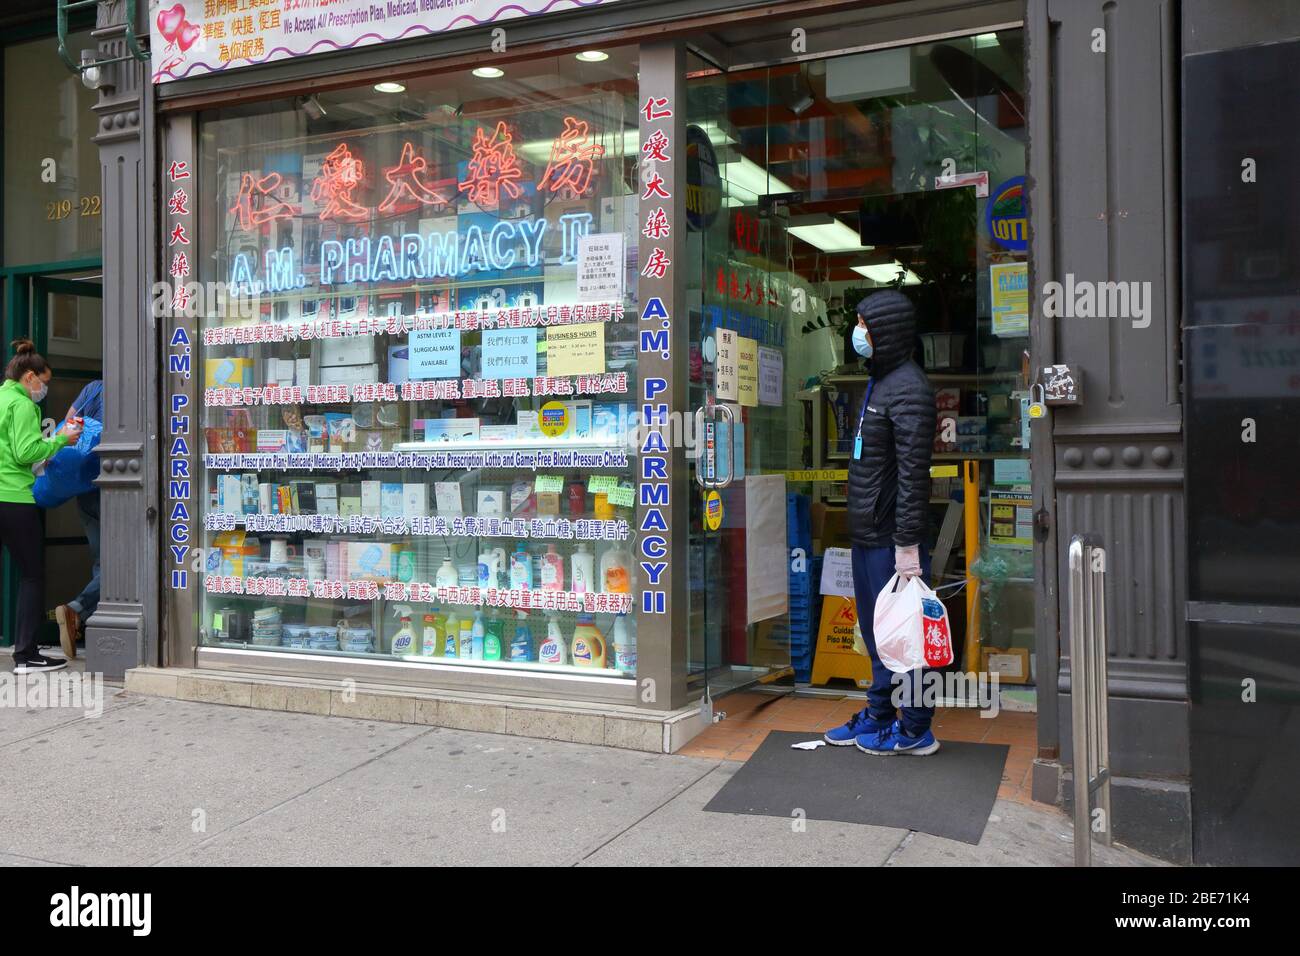 Eine Person, die während des Coronavirus in einer Apotheke in Manhattan Chinatown in New York verschreibungspflichtige Medikamente abholt... WEITERE INFORMATIONEN FINDEN SIE UNTER „VOLLSTÄNDIGE BILDUNTERSCHRIFT“ Stockfoto